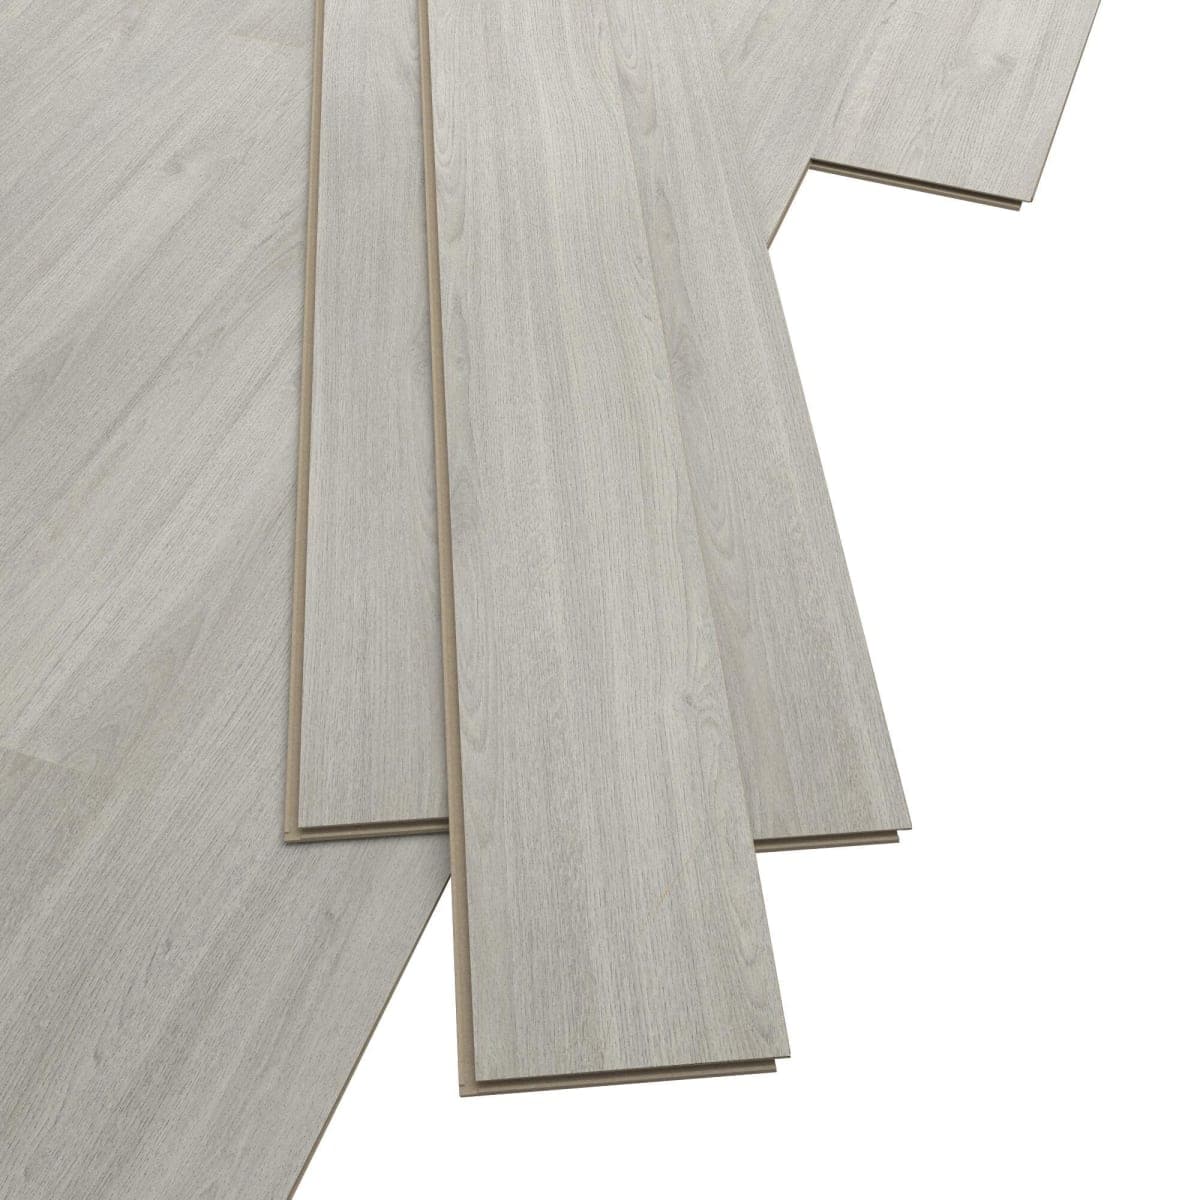 APIA LAMINATE 7/31 2.49M² MEDIUM GREY - Premium Bleached Laminate Floors from Bricocenter - Just €15.99! Shop now at Maltashopper.com